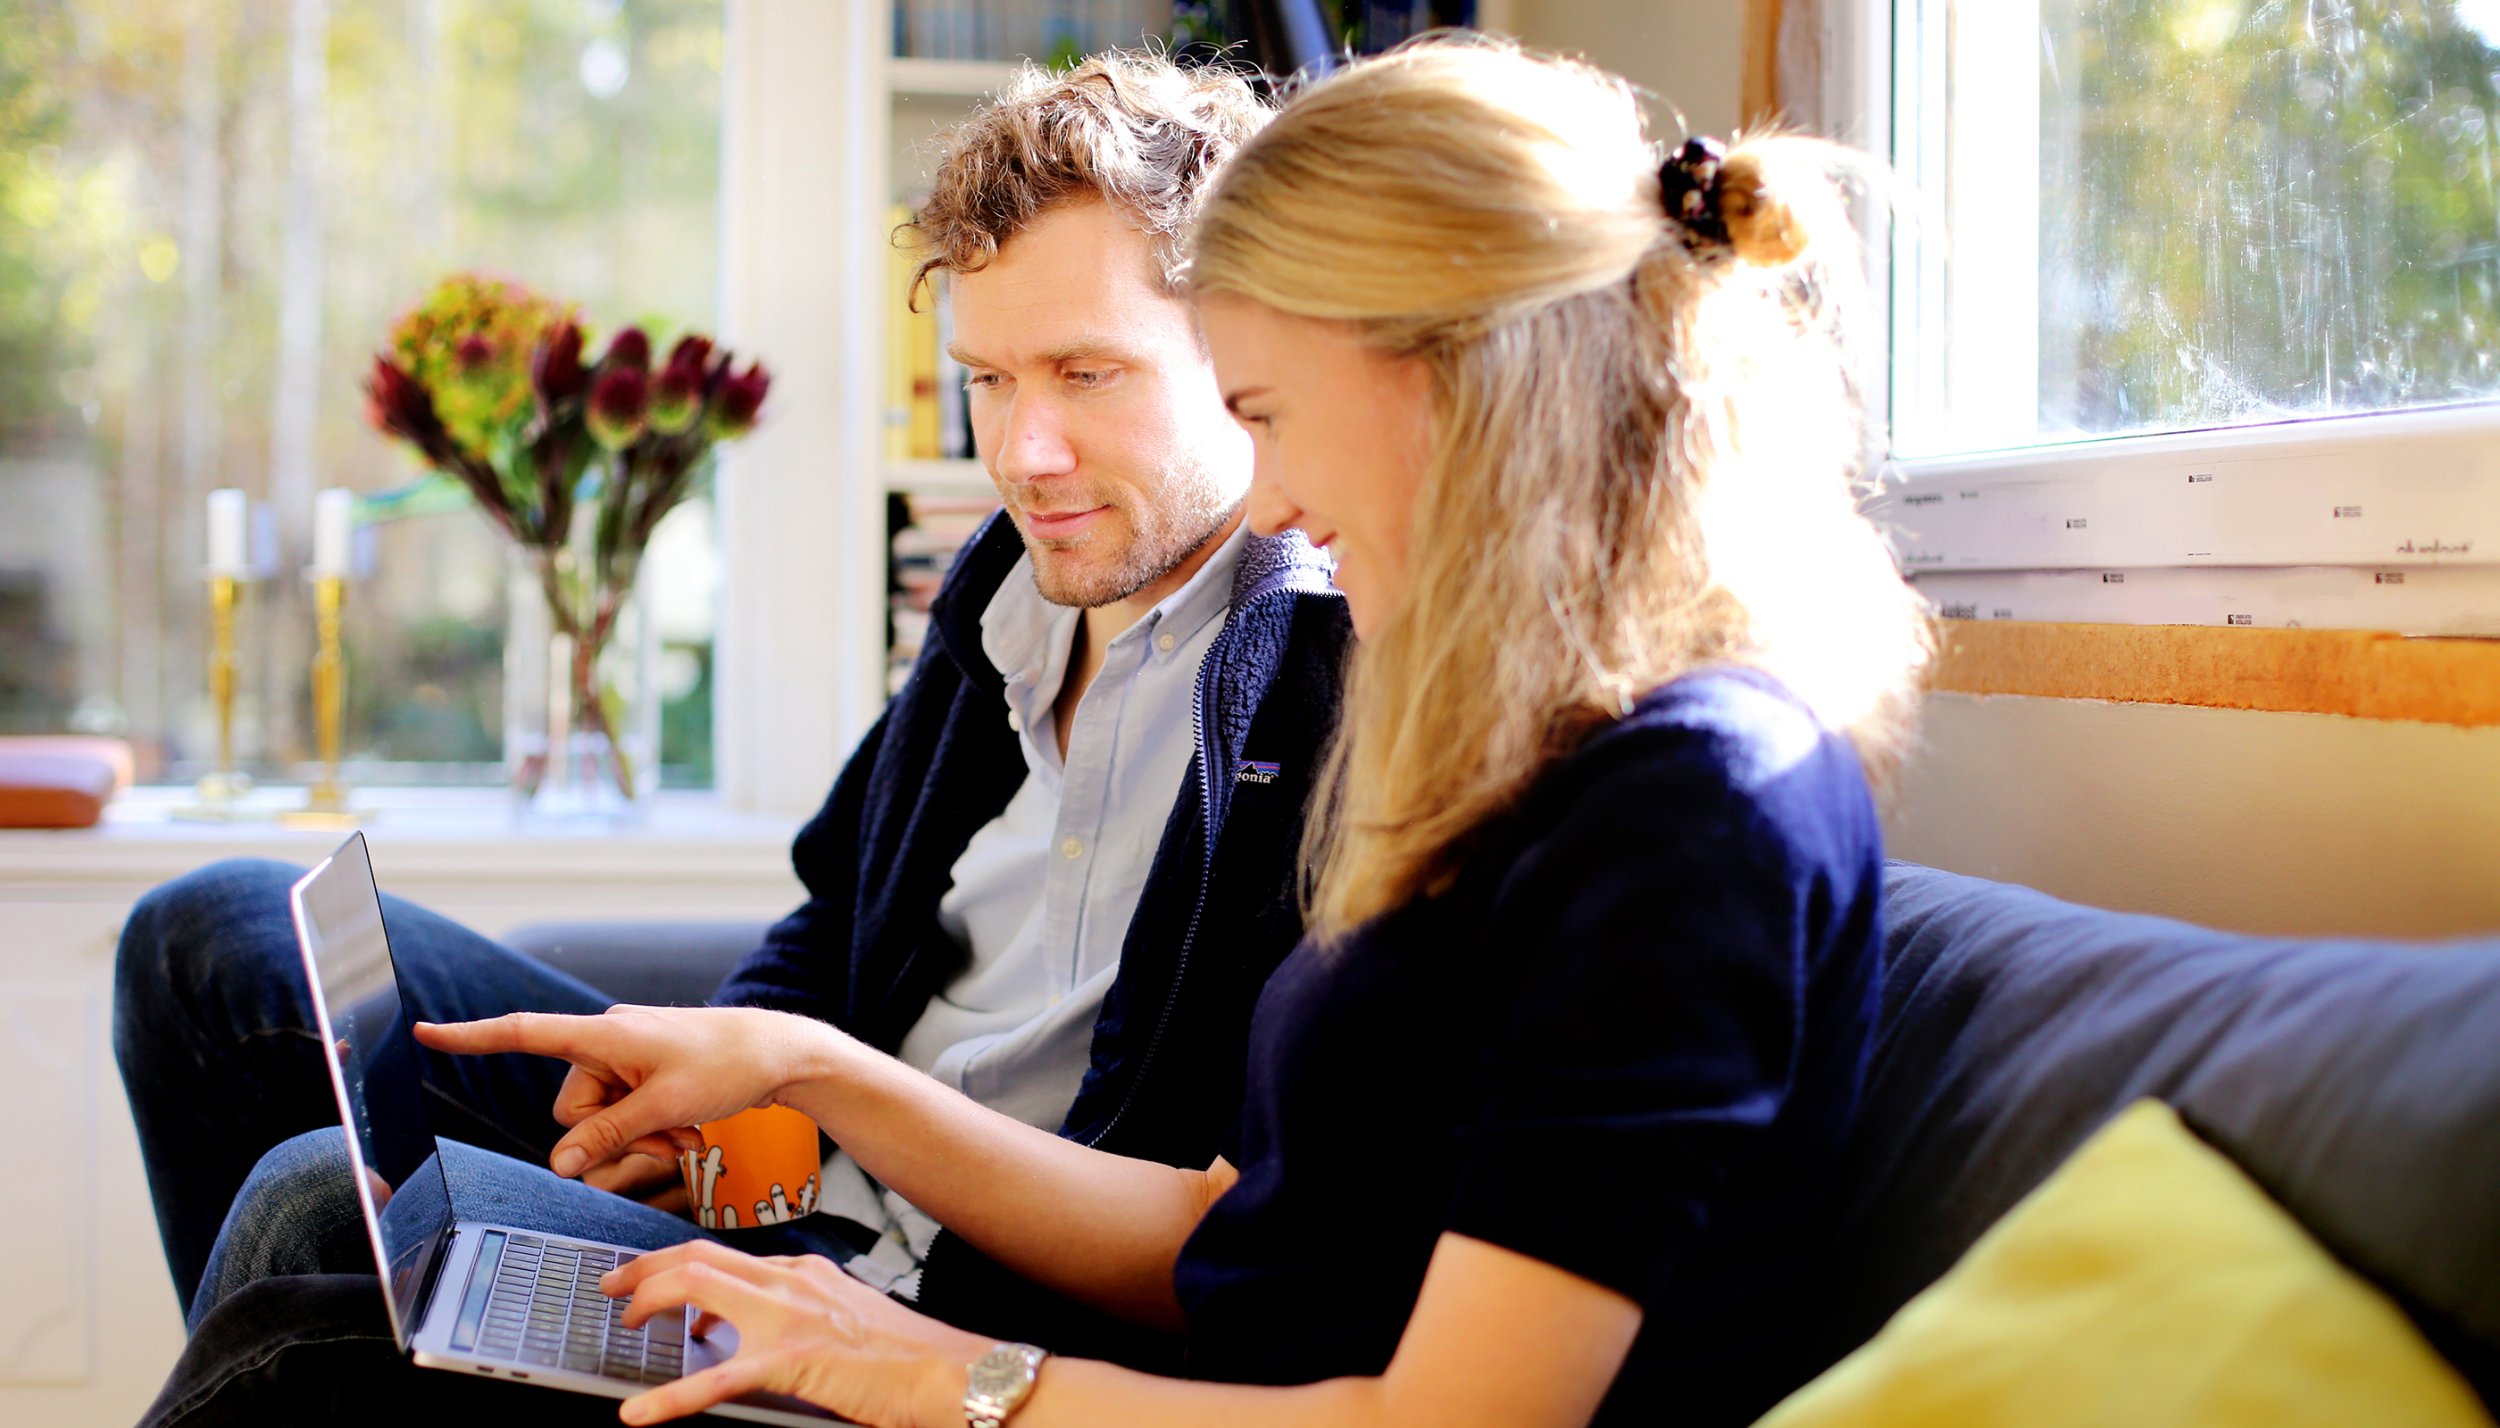 Par i sofa ser og peker på dataskjerm